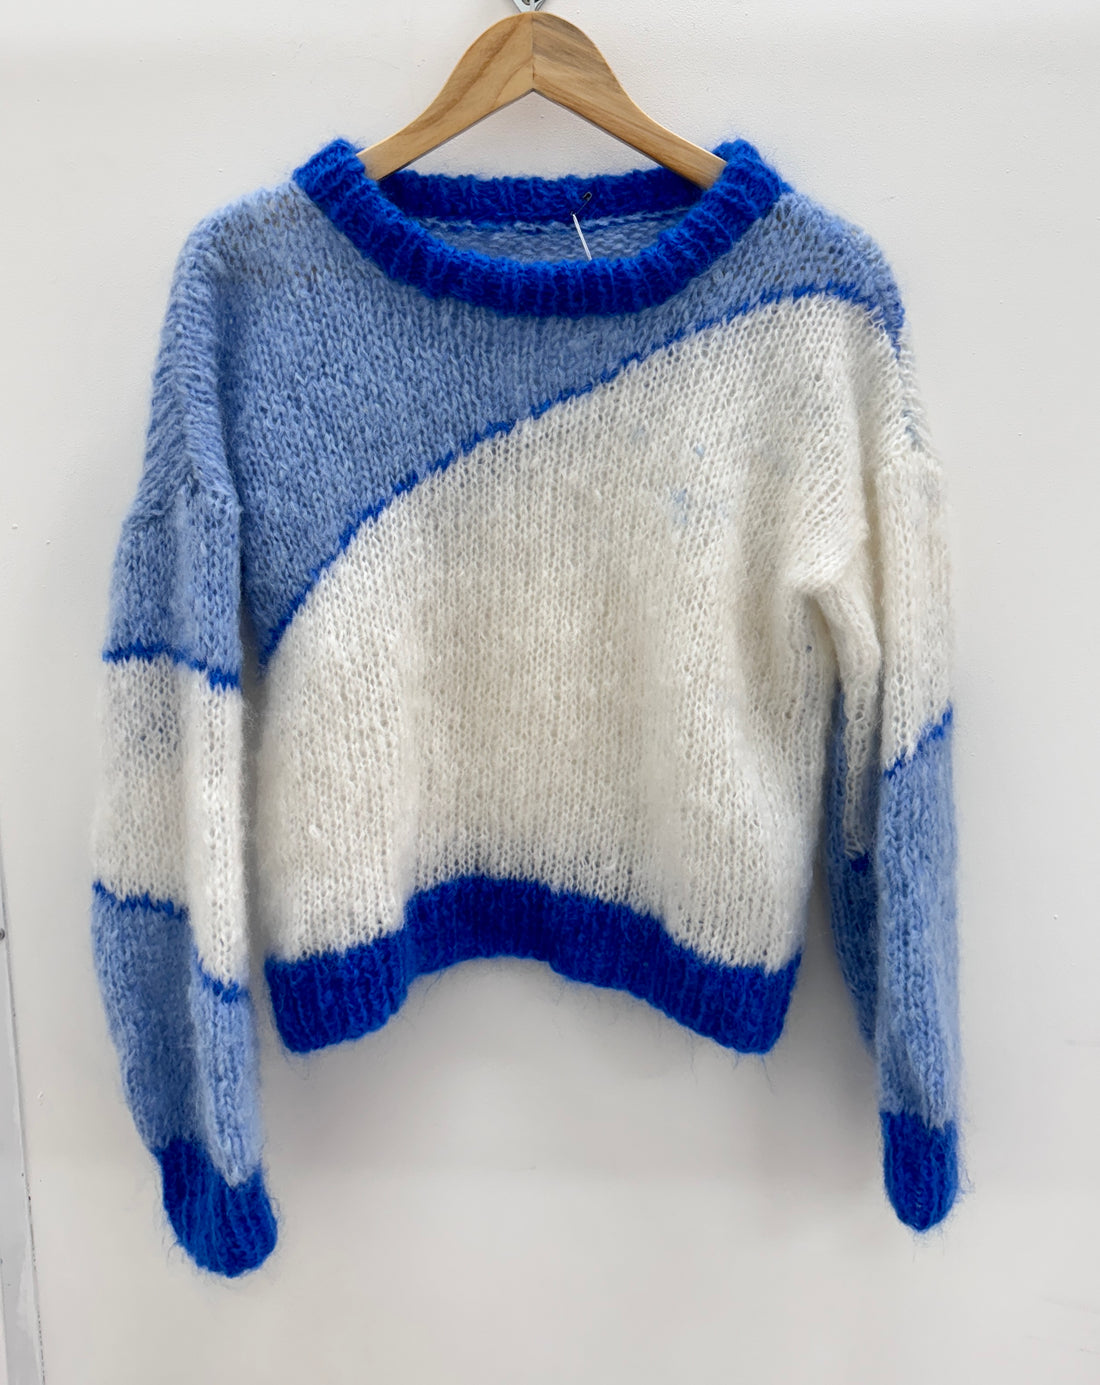 Blue patterned jumper